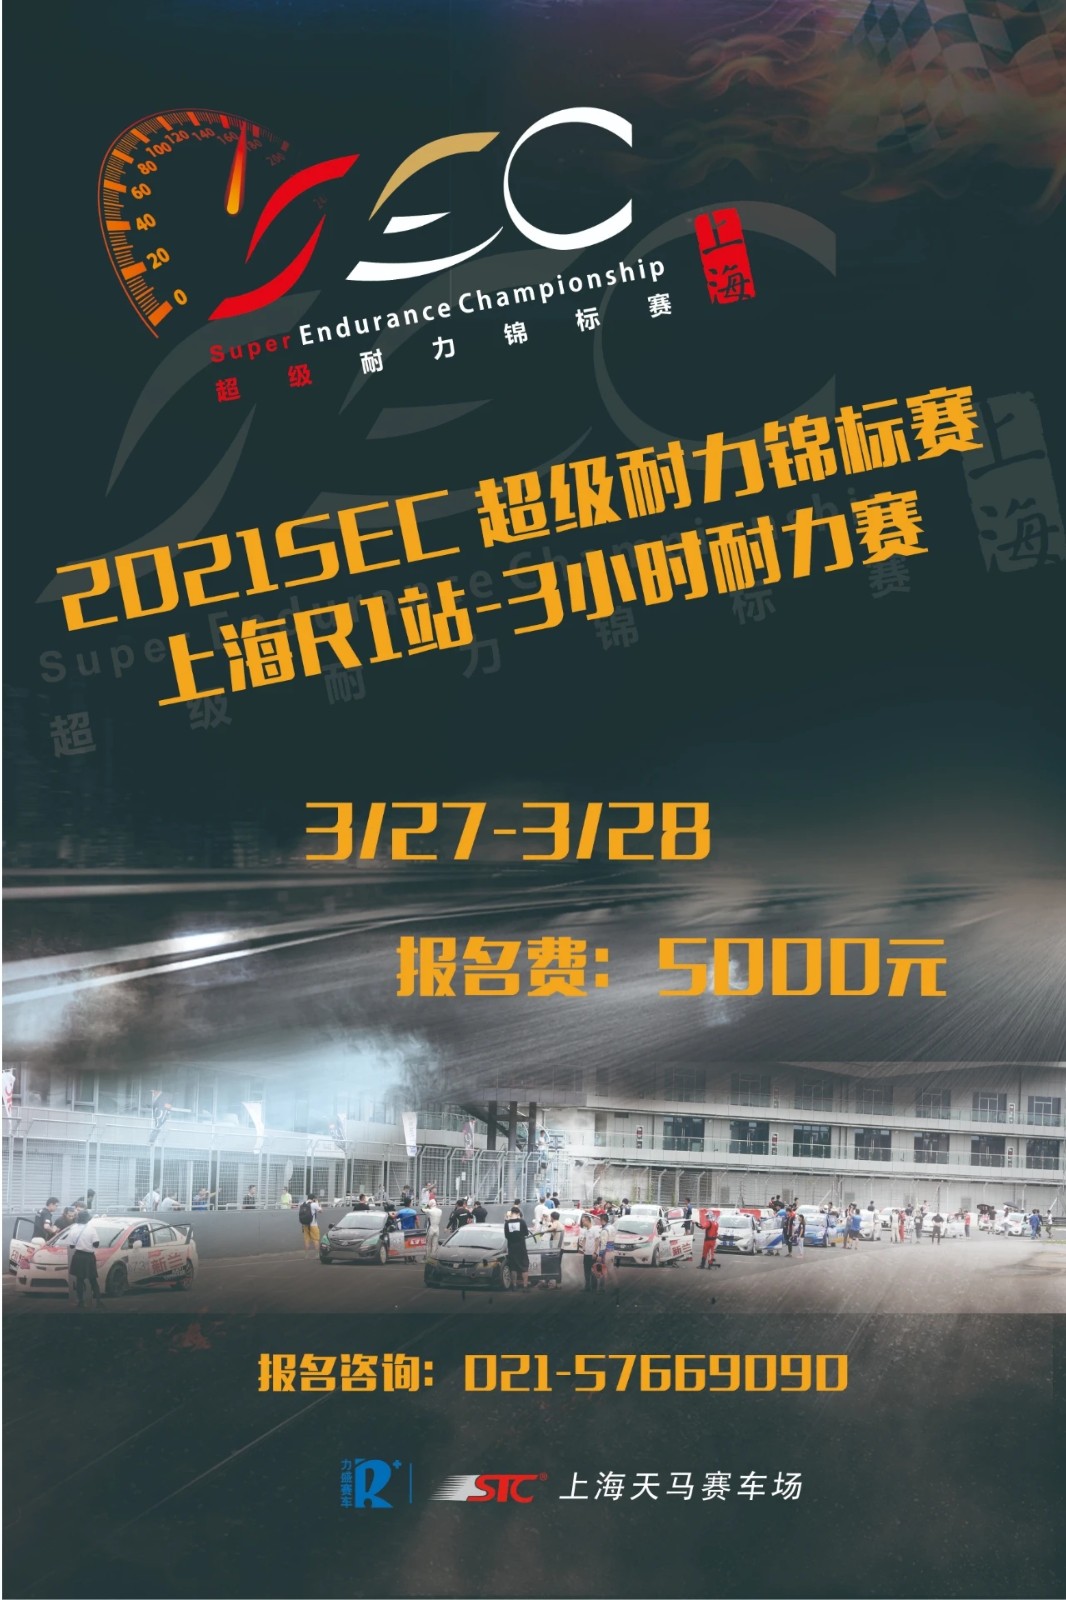 2021SEC超级耐力锦标赛 上海R1站-3小时耐力赛开始报名啦